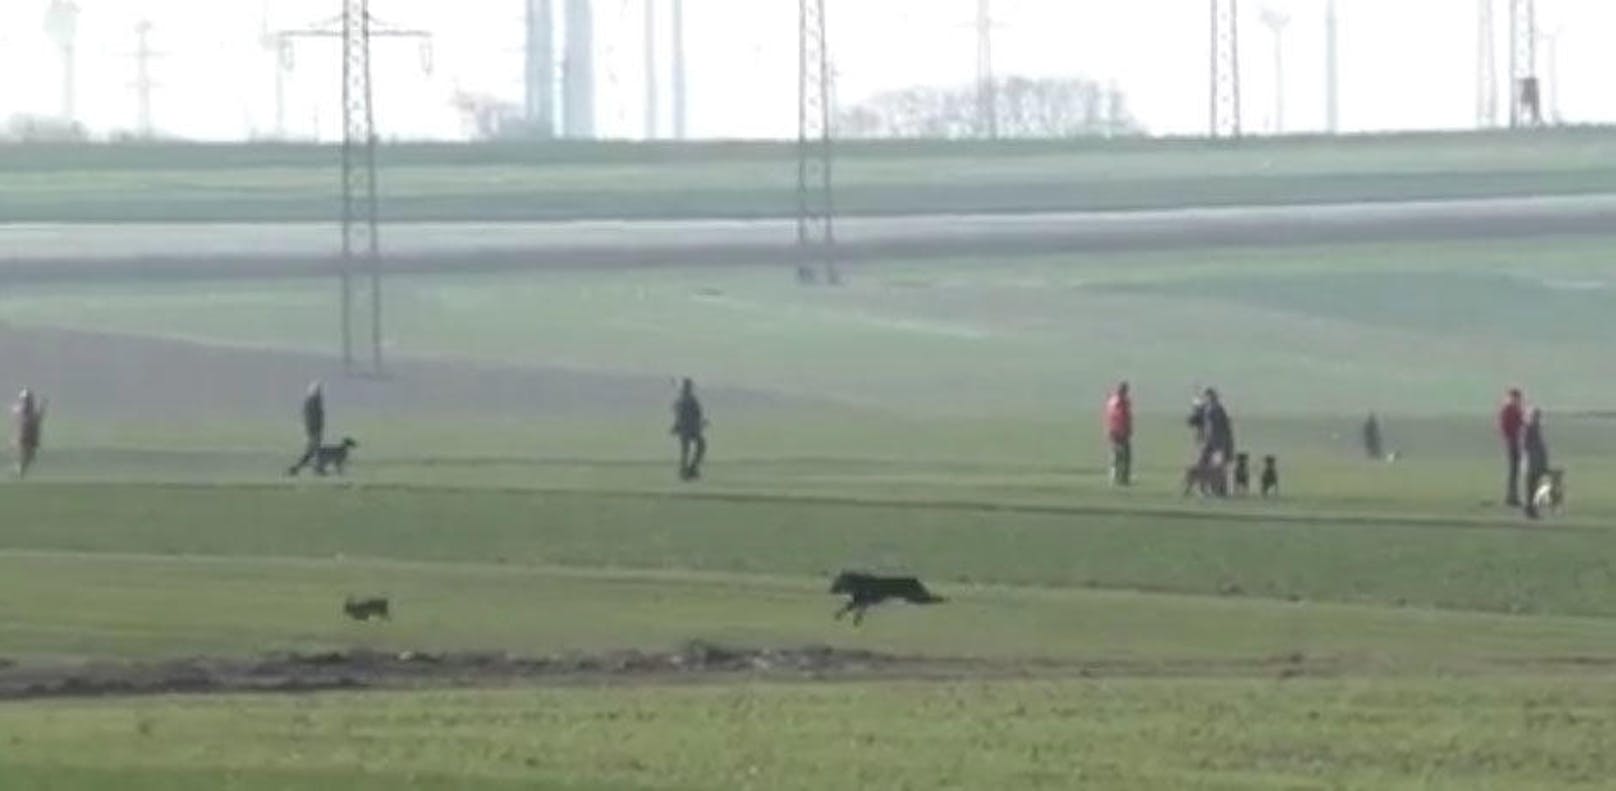 Im Hintergrund mehrere Jäger, im Vordergrund ein Hund der einen Feldhasen vor sich hertereibt.